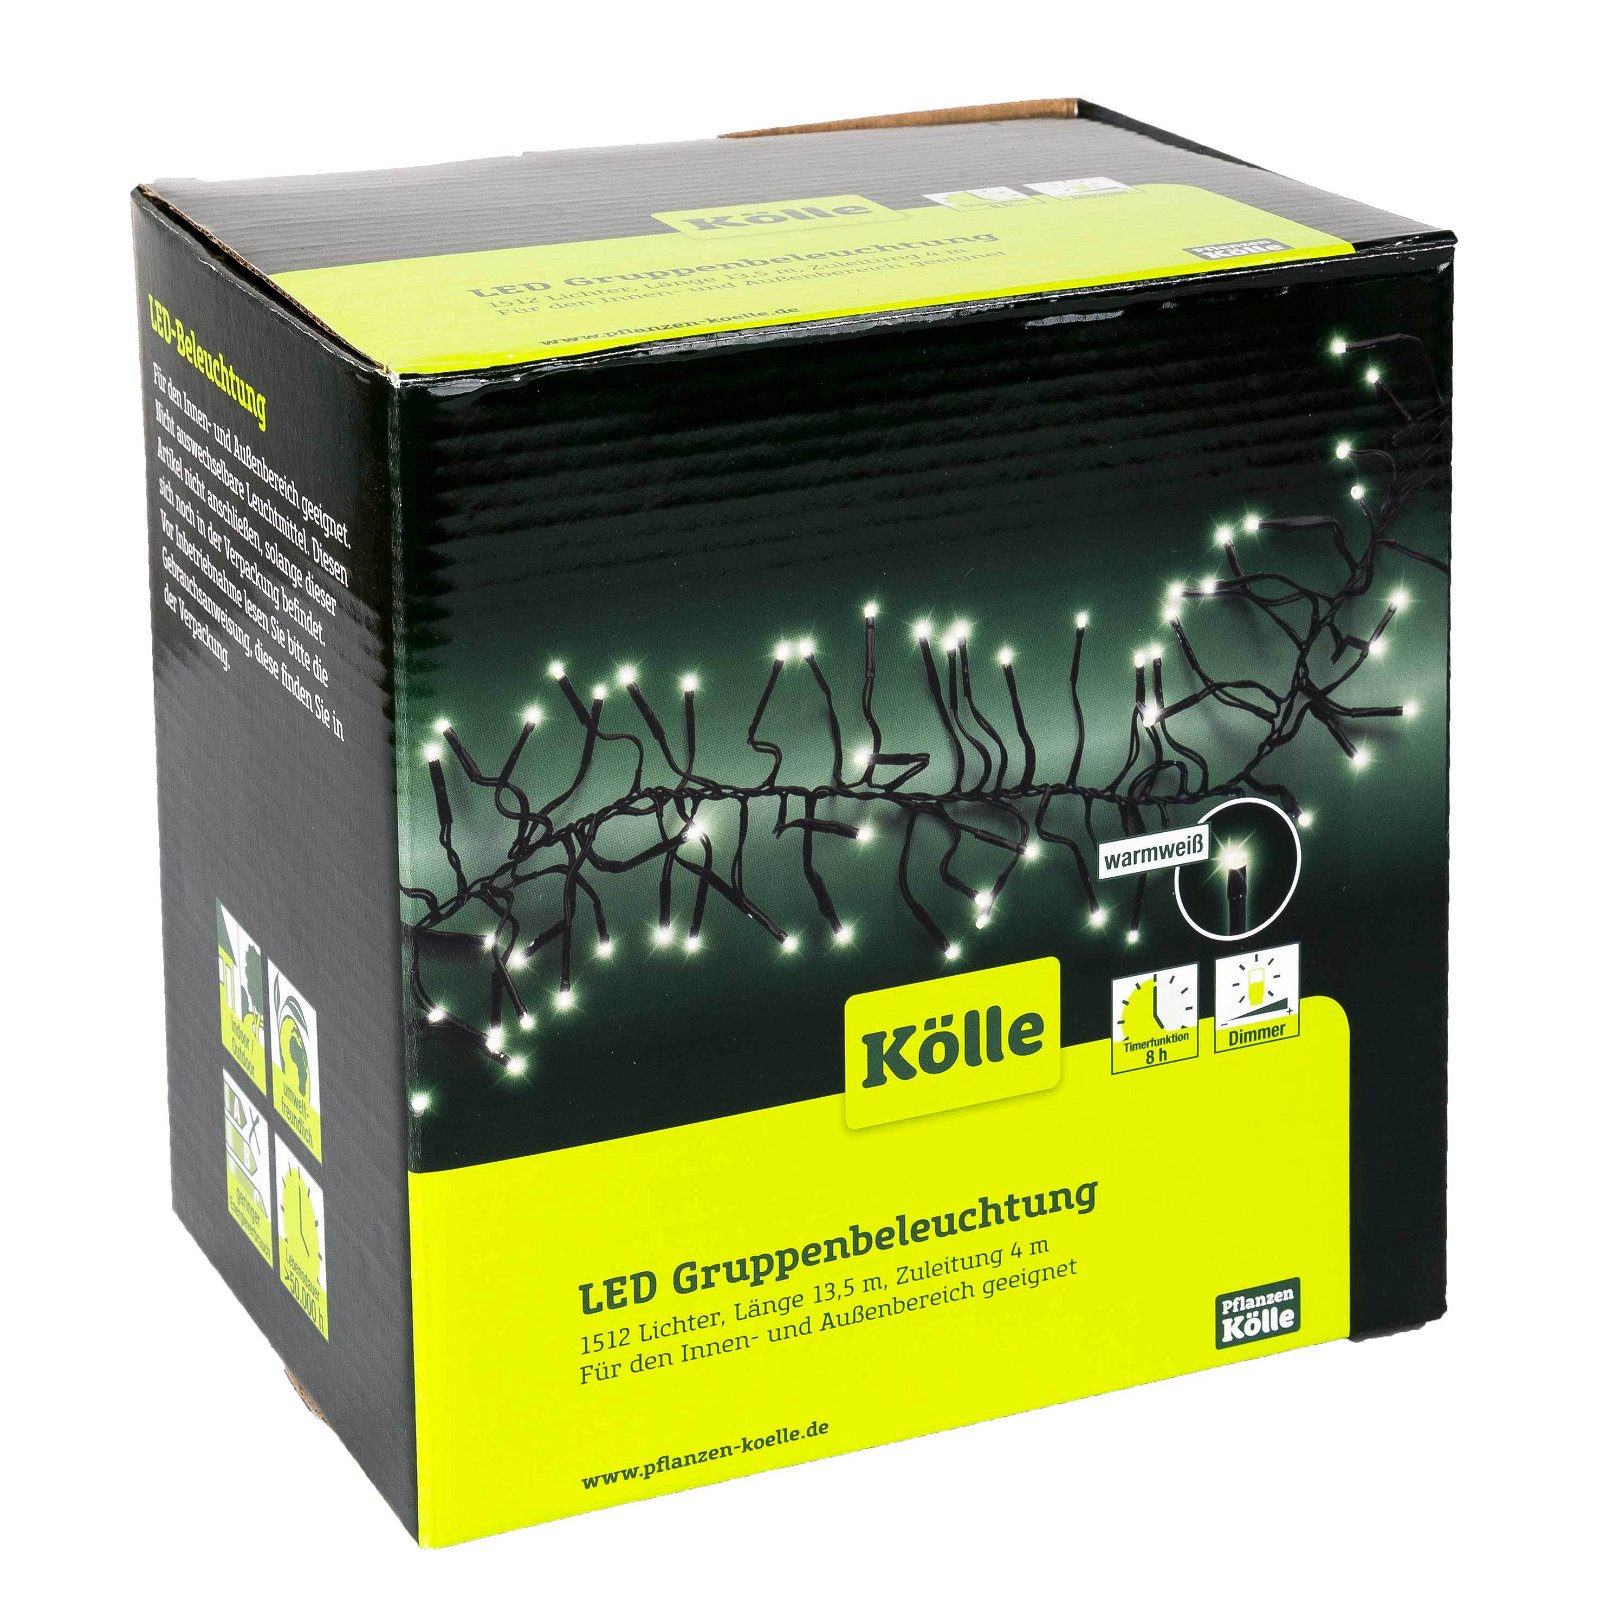 Kölle LED Lichterkette, Gruppenbeleuchtung mit 1.512 Lichtern, warmweiß, 13,5 m, schwarzes Kabel